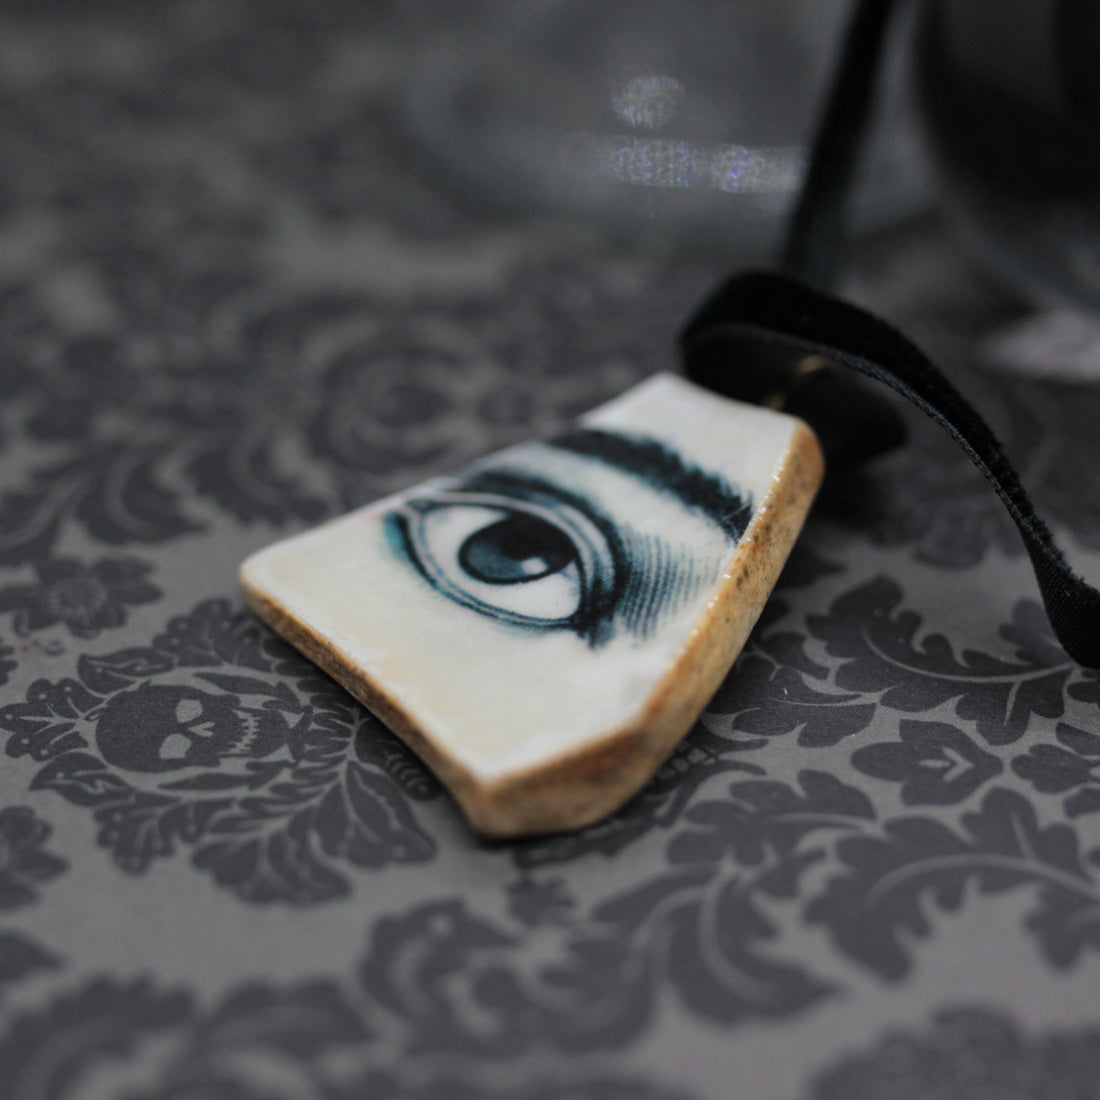 evil eye pottery